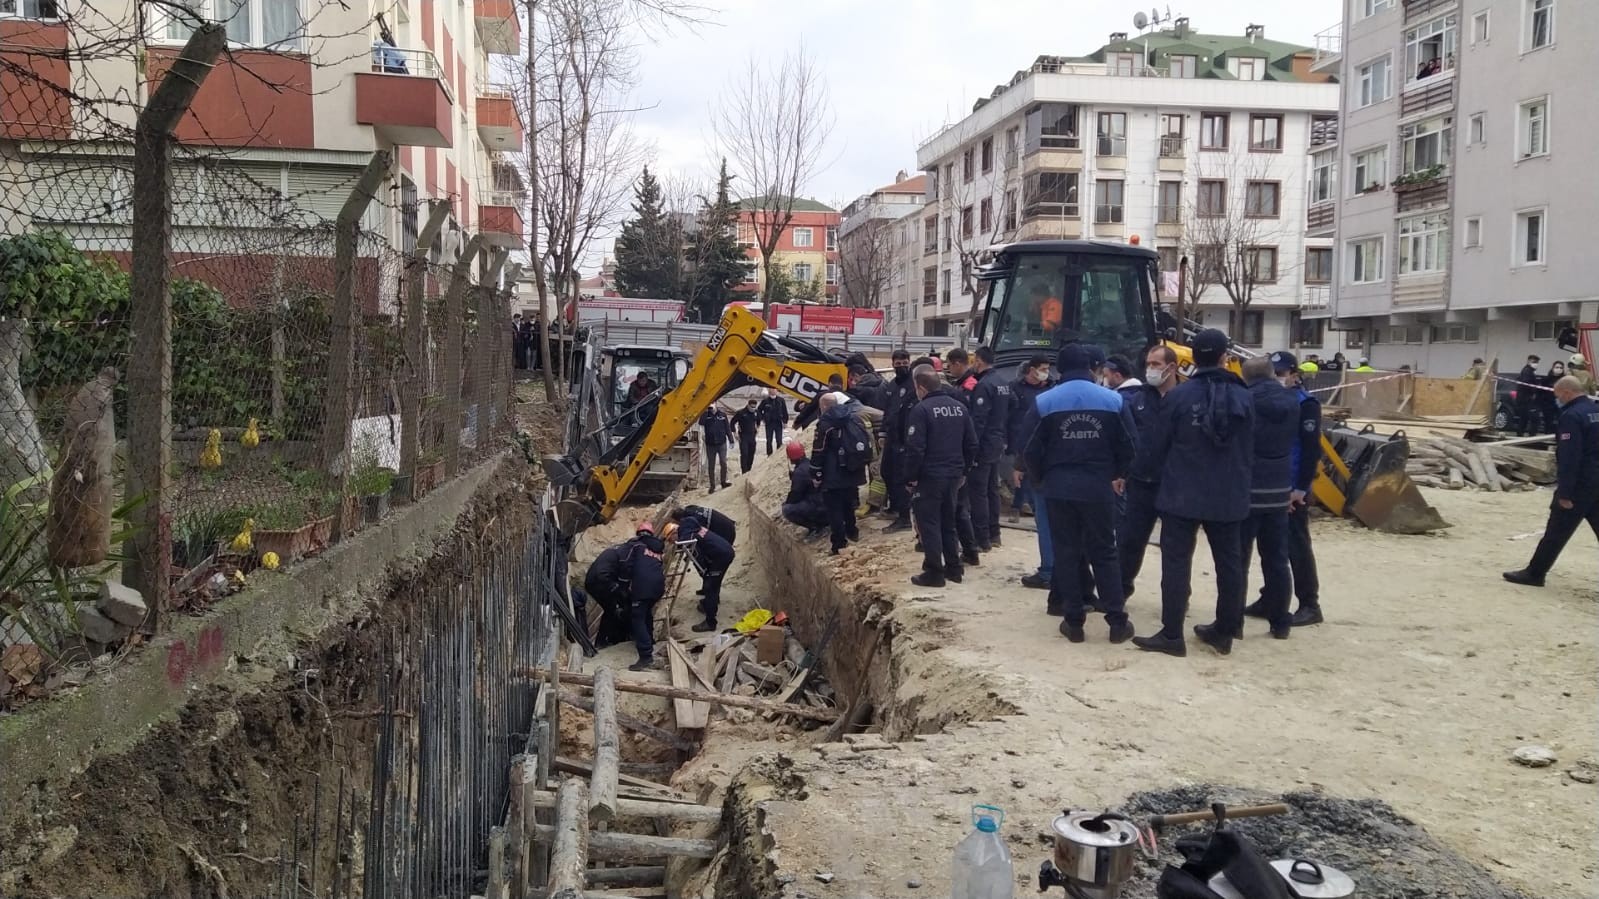 Avcılar’da inşat alanında göçük: 2 işçi toprak altında kaldı #istanbul